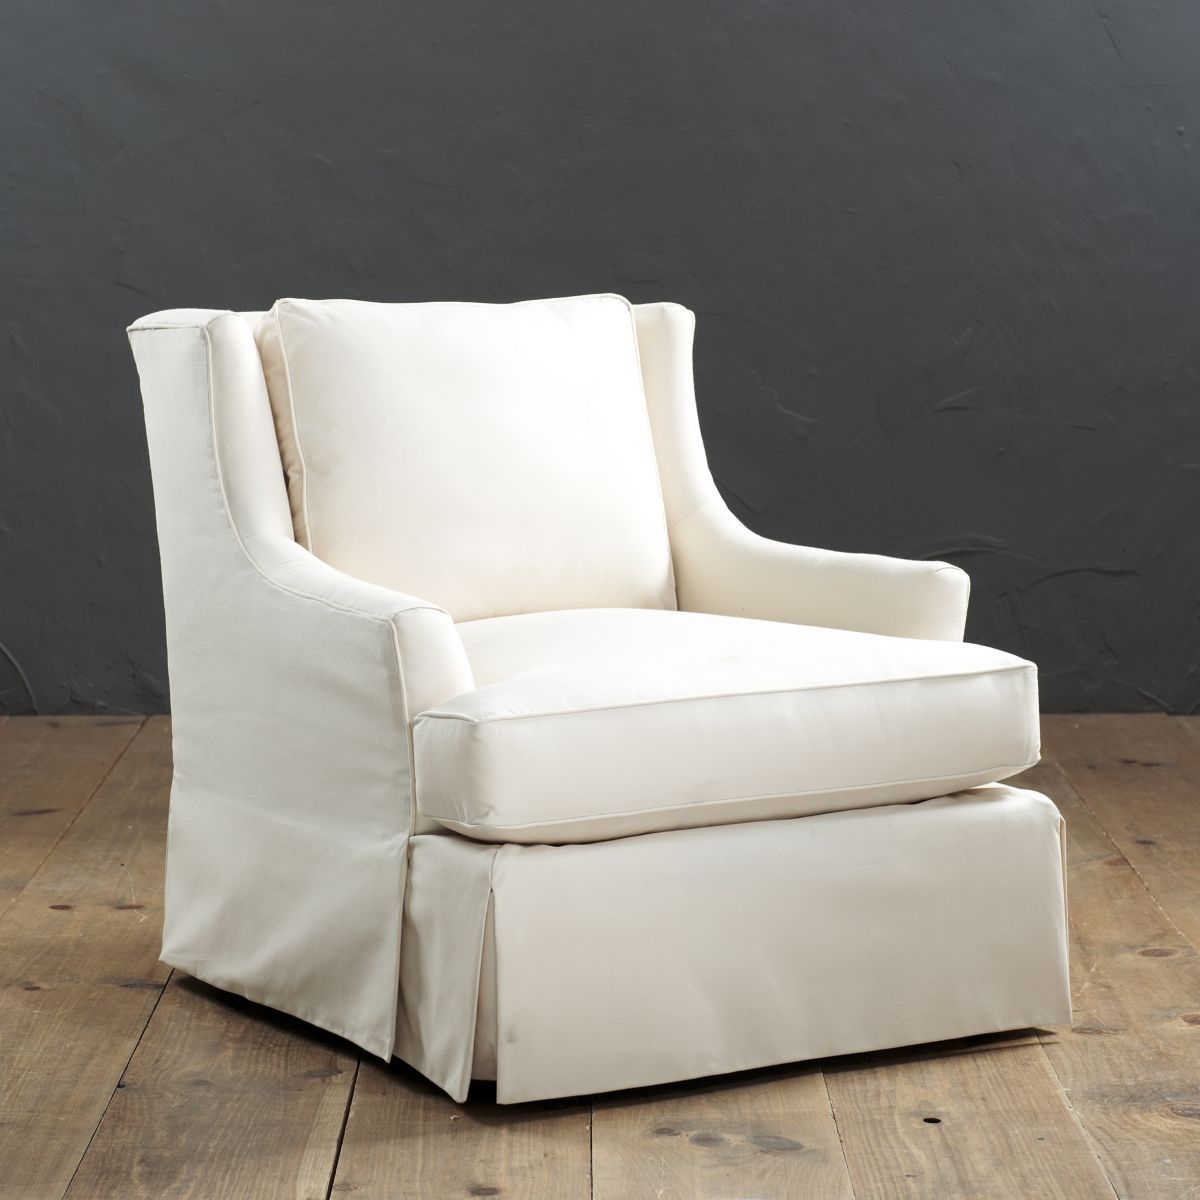 Upholstered swivel rocker chairs